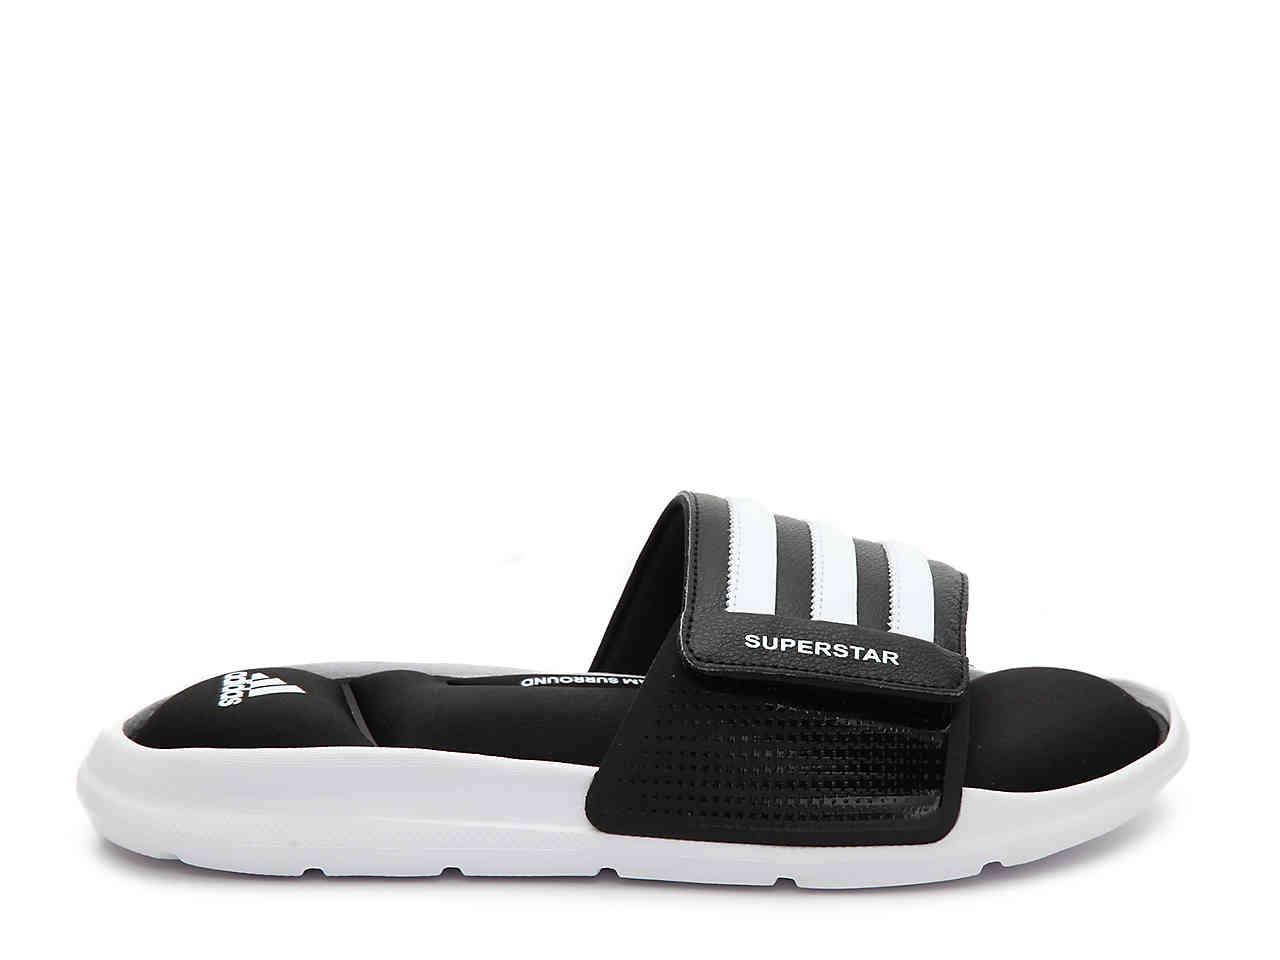 adidas Synthetic Superstar 5g Slide Sandal in Black/White ...